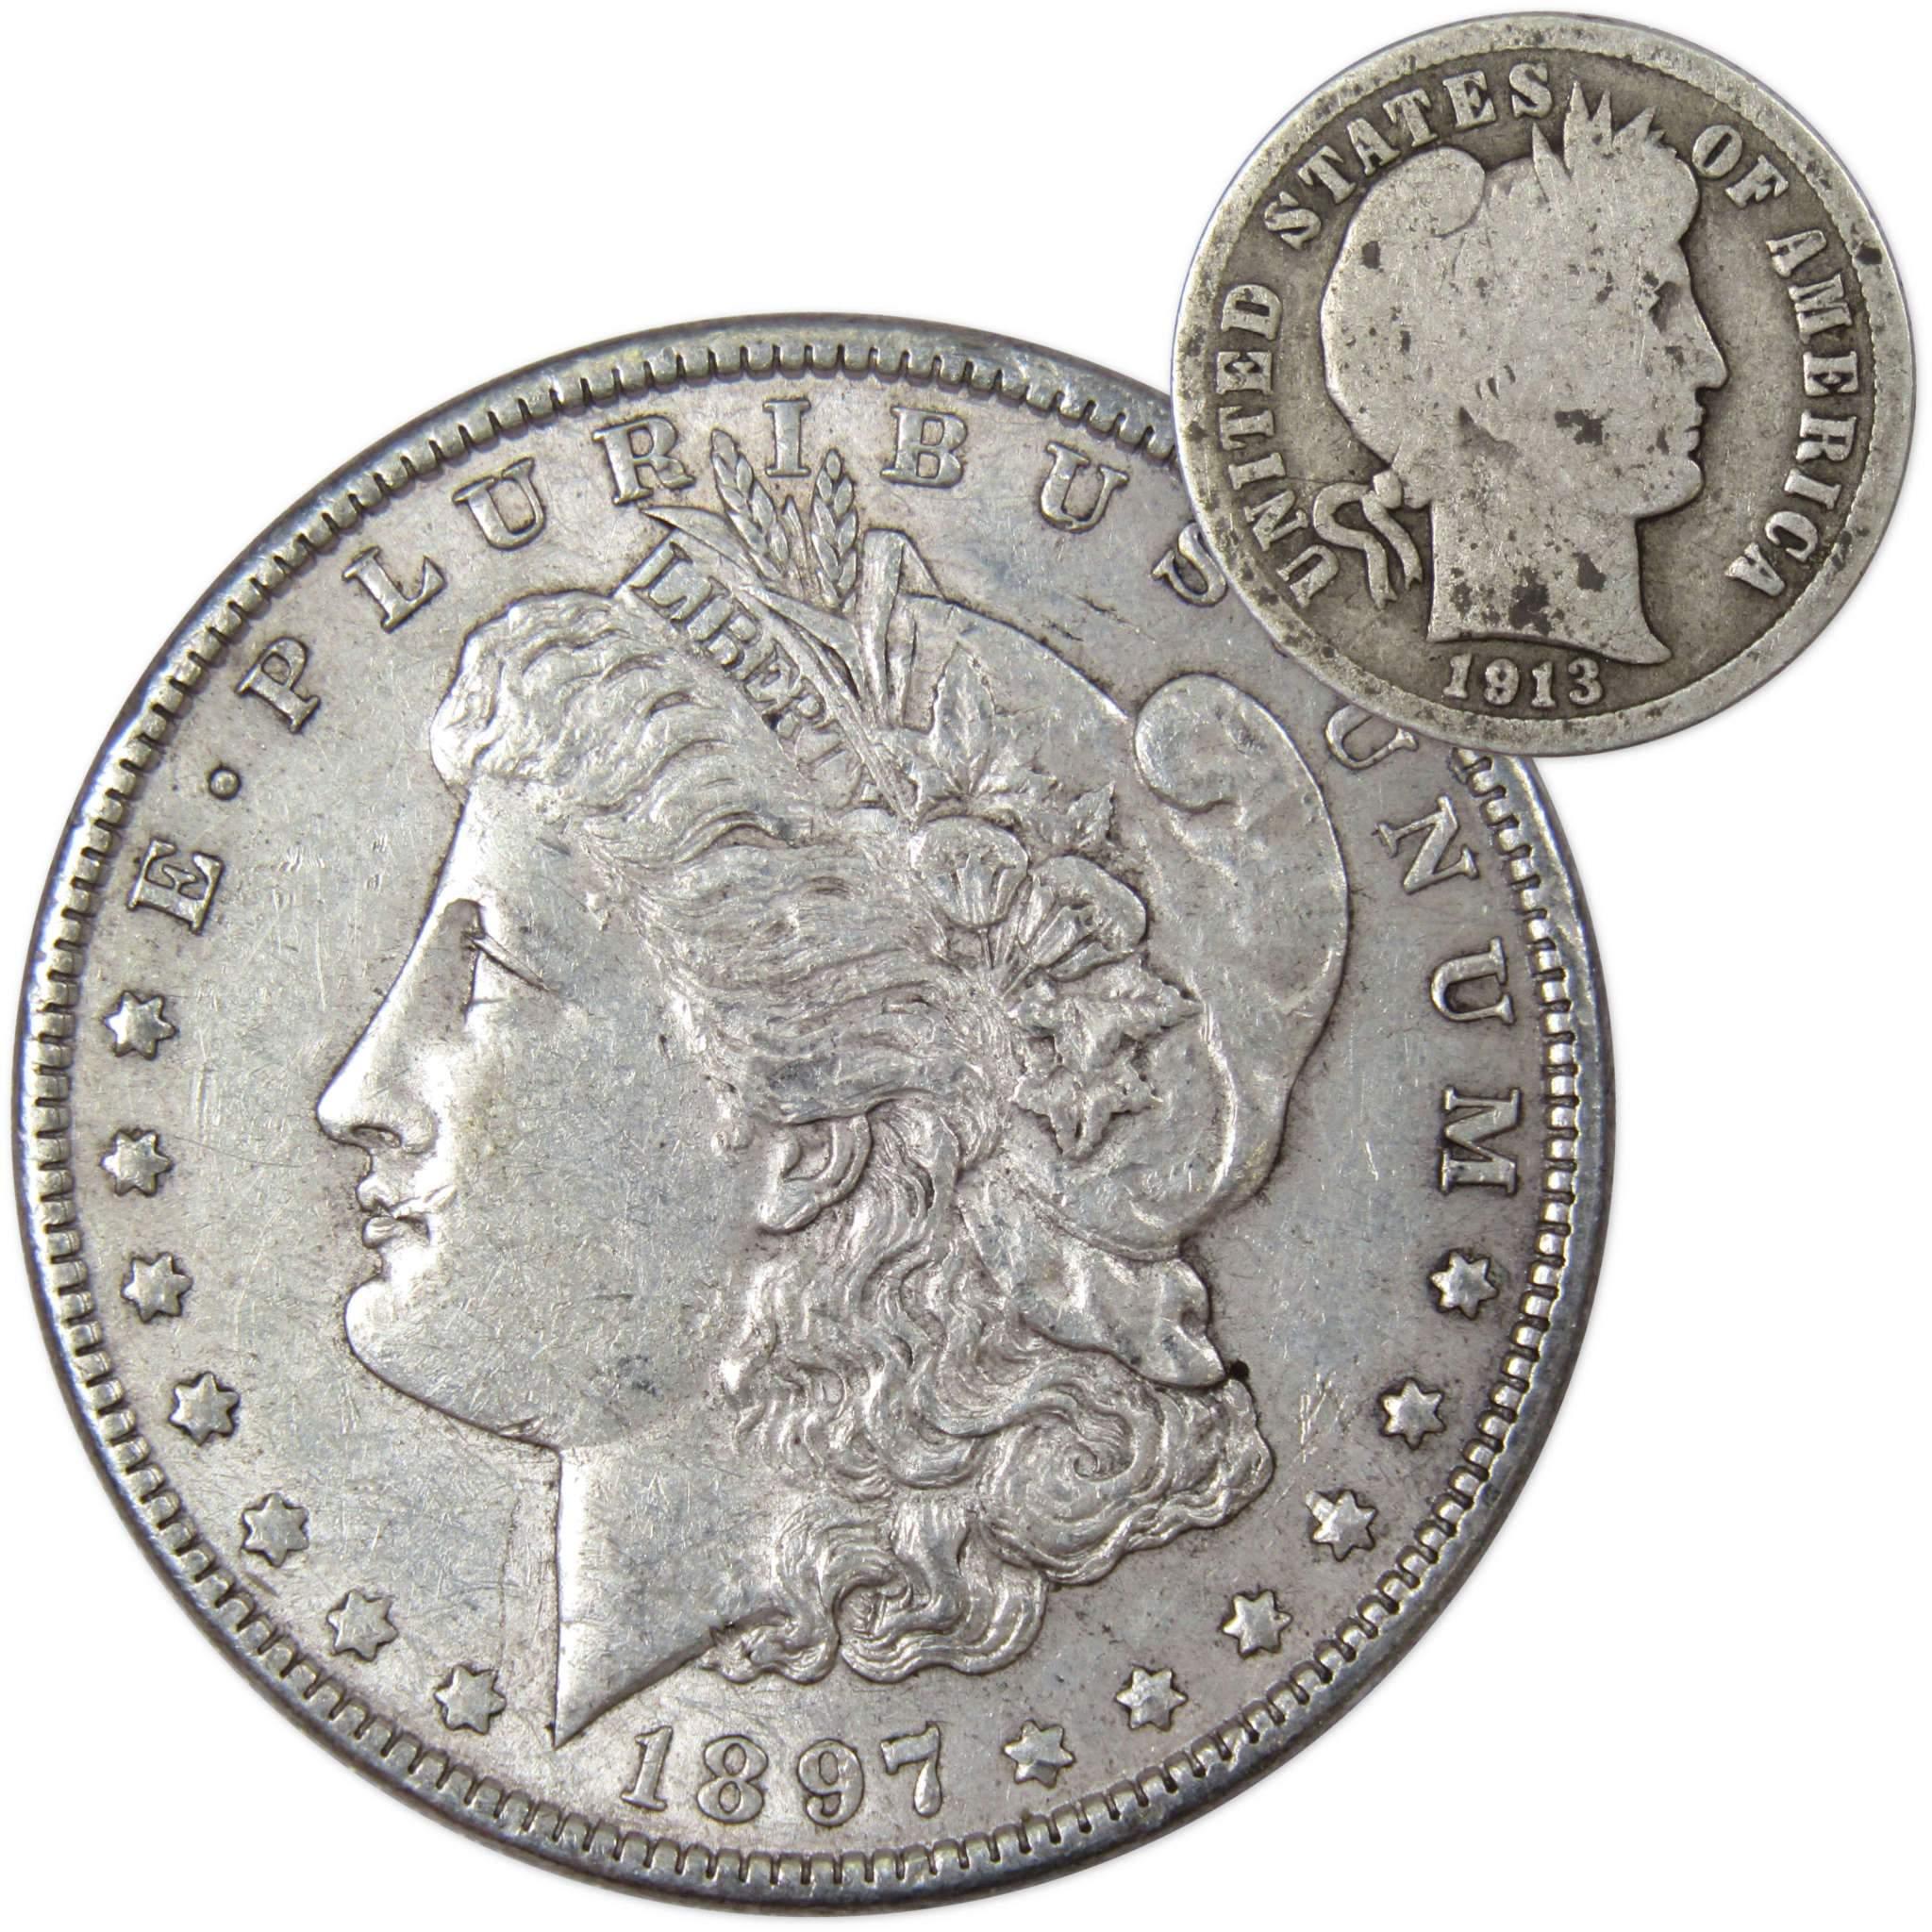 1897 Morgan Dollar XF EF Extremely Fine 90% Silver with 1913 Barber Dime G Good - Morgan coin - Morgan silver dollar - Morgan silver dollar for sale - Profile Coins &amp; Collectibles